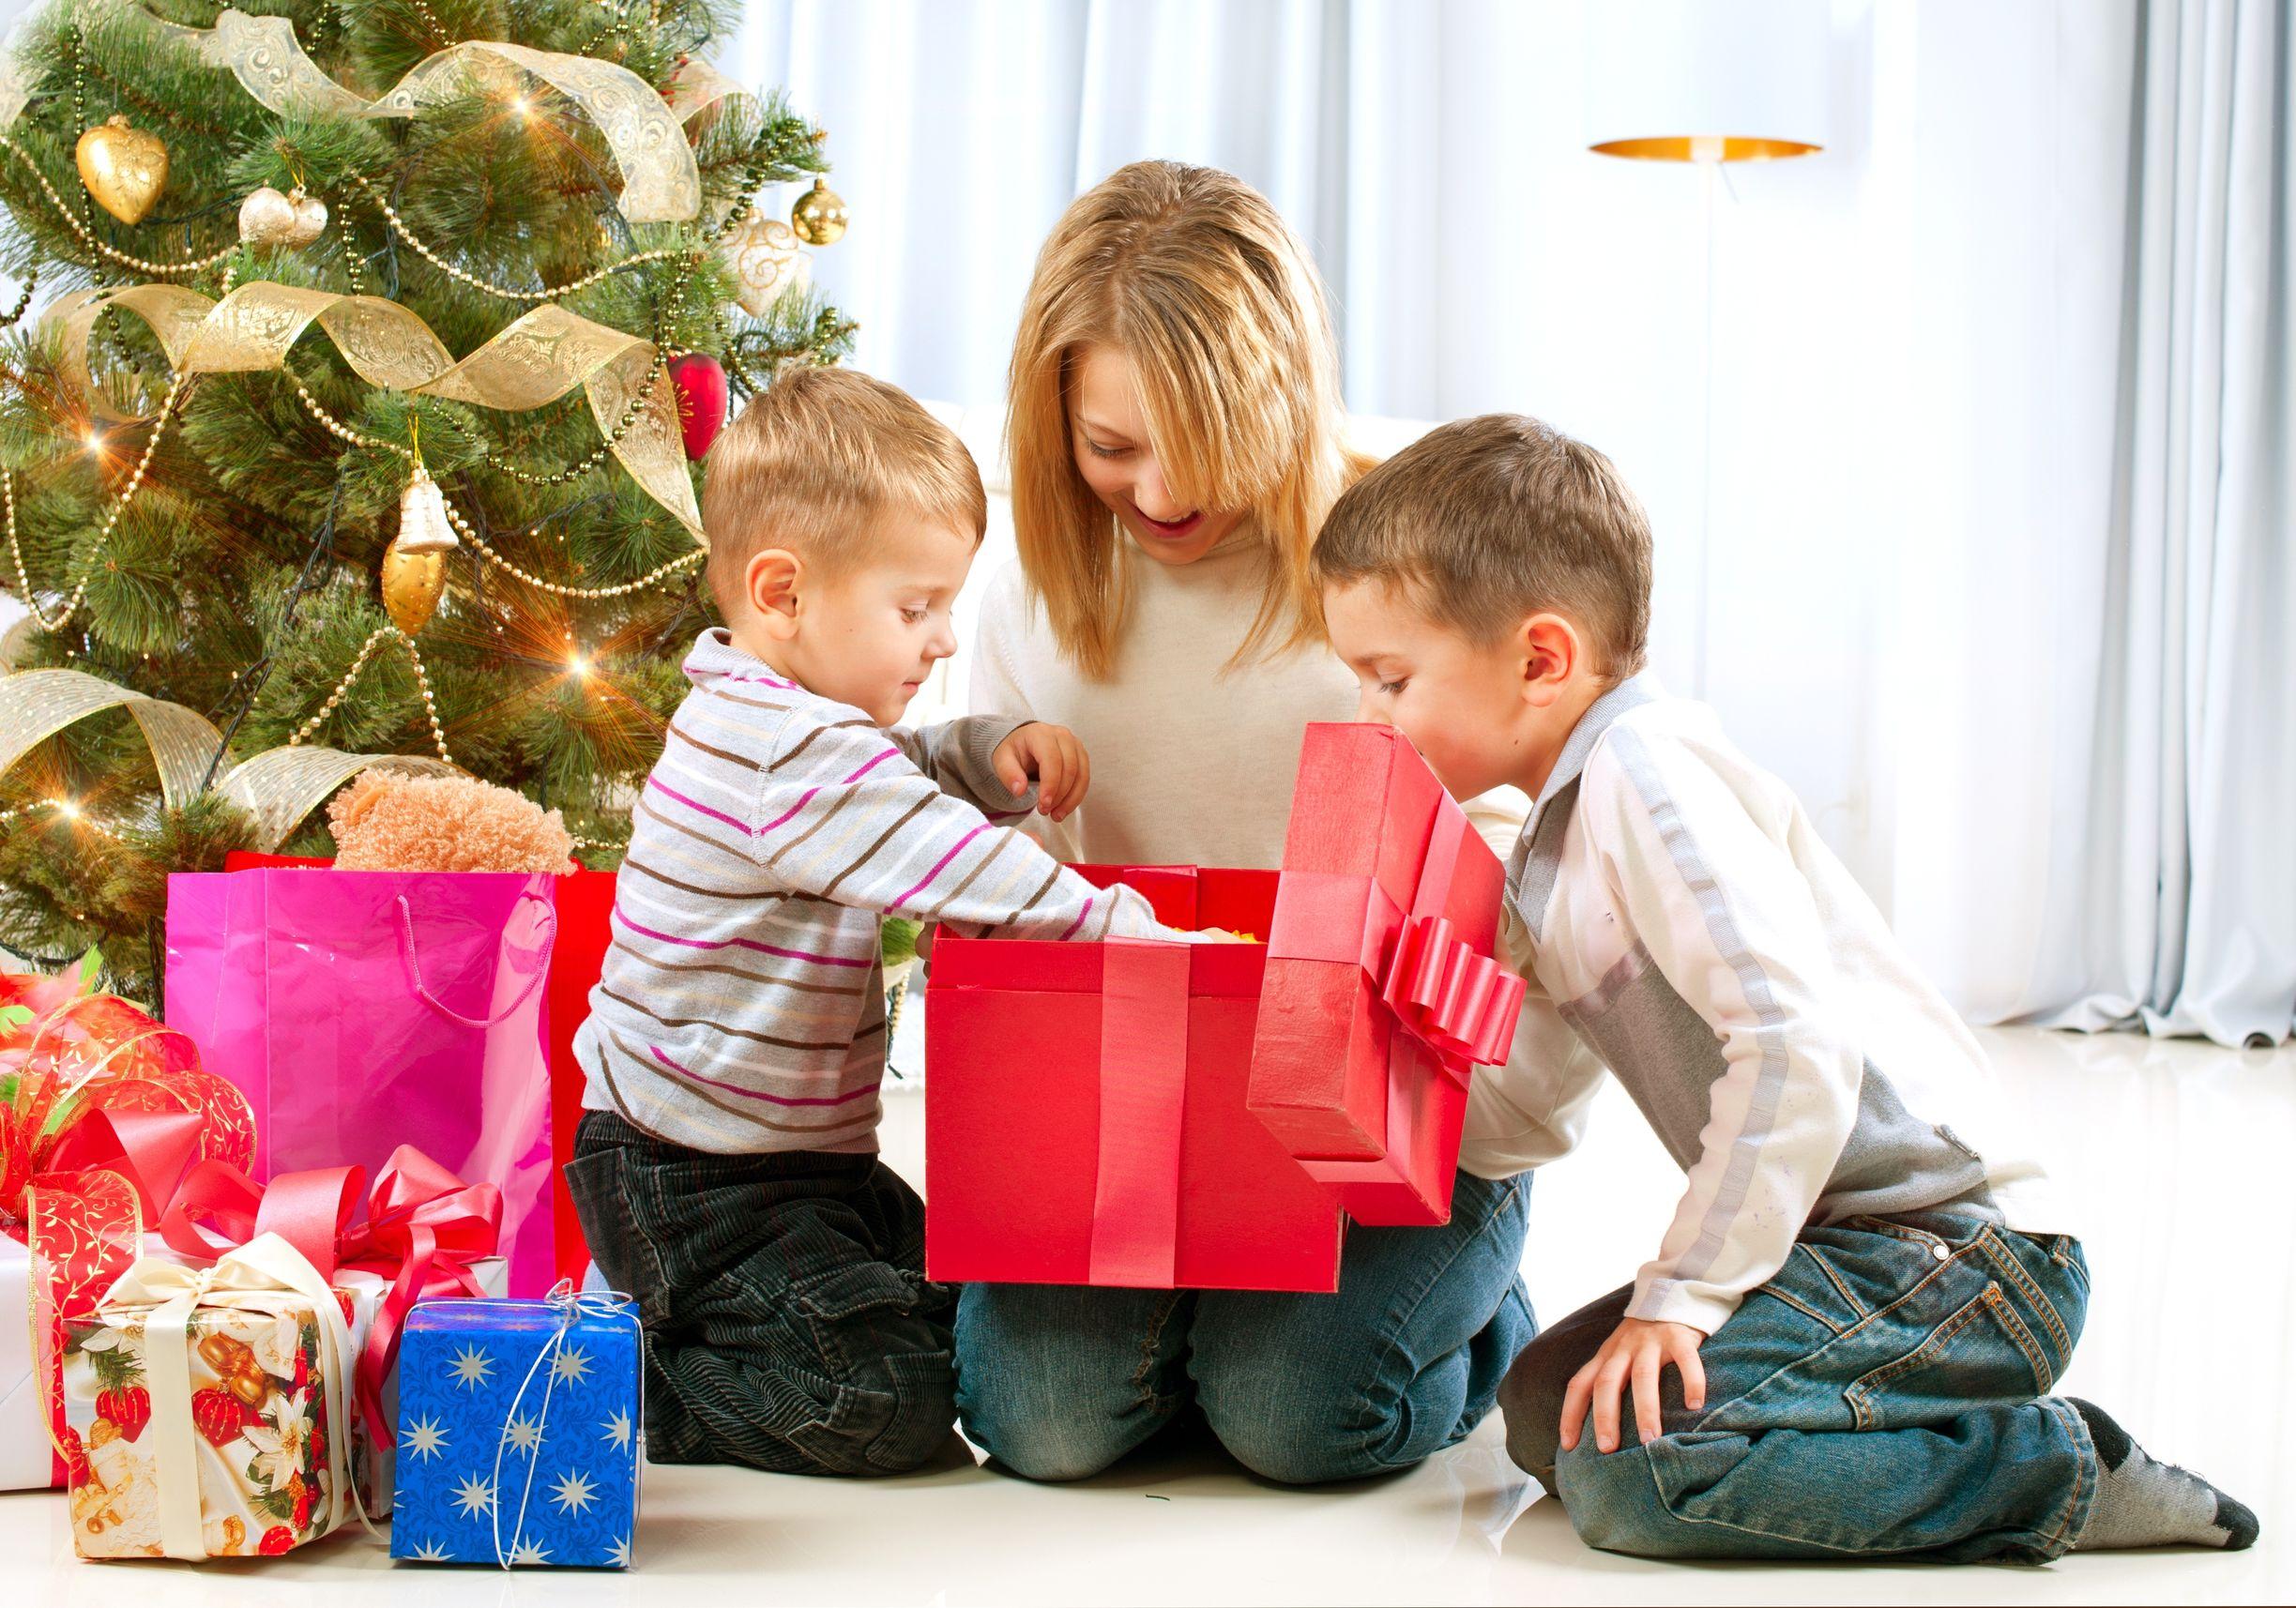 Рождество дарит подарки. Подарки для детей. Новогодние подарки для детей. Подарки под ёлкой. Ребенок дарит подарок.